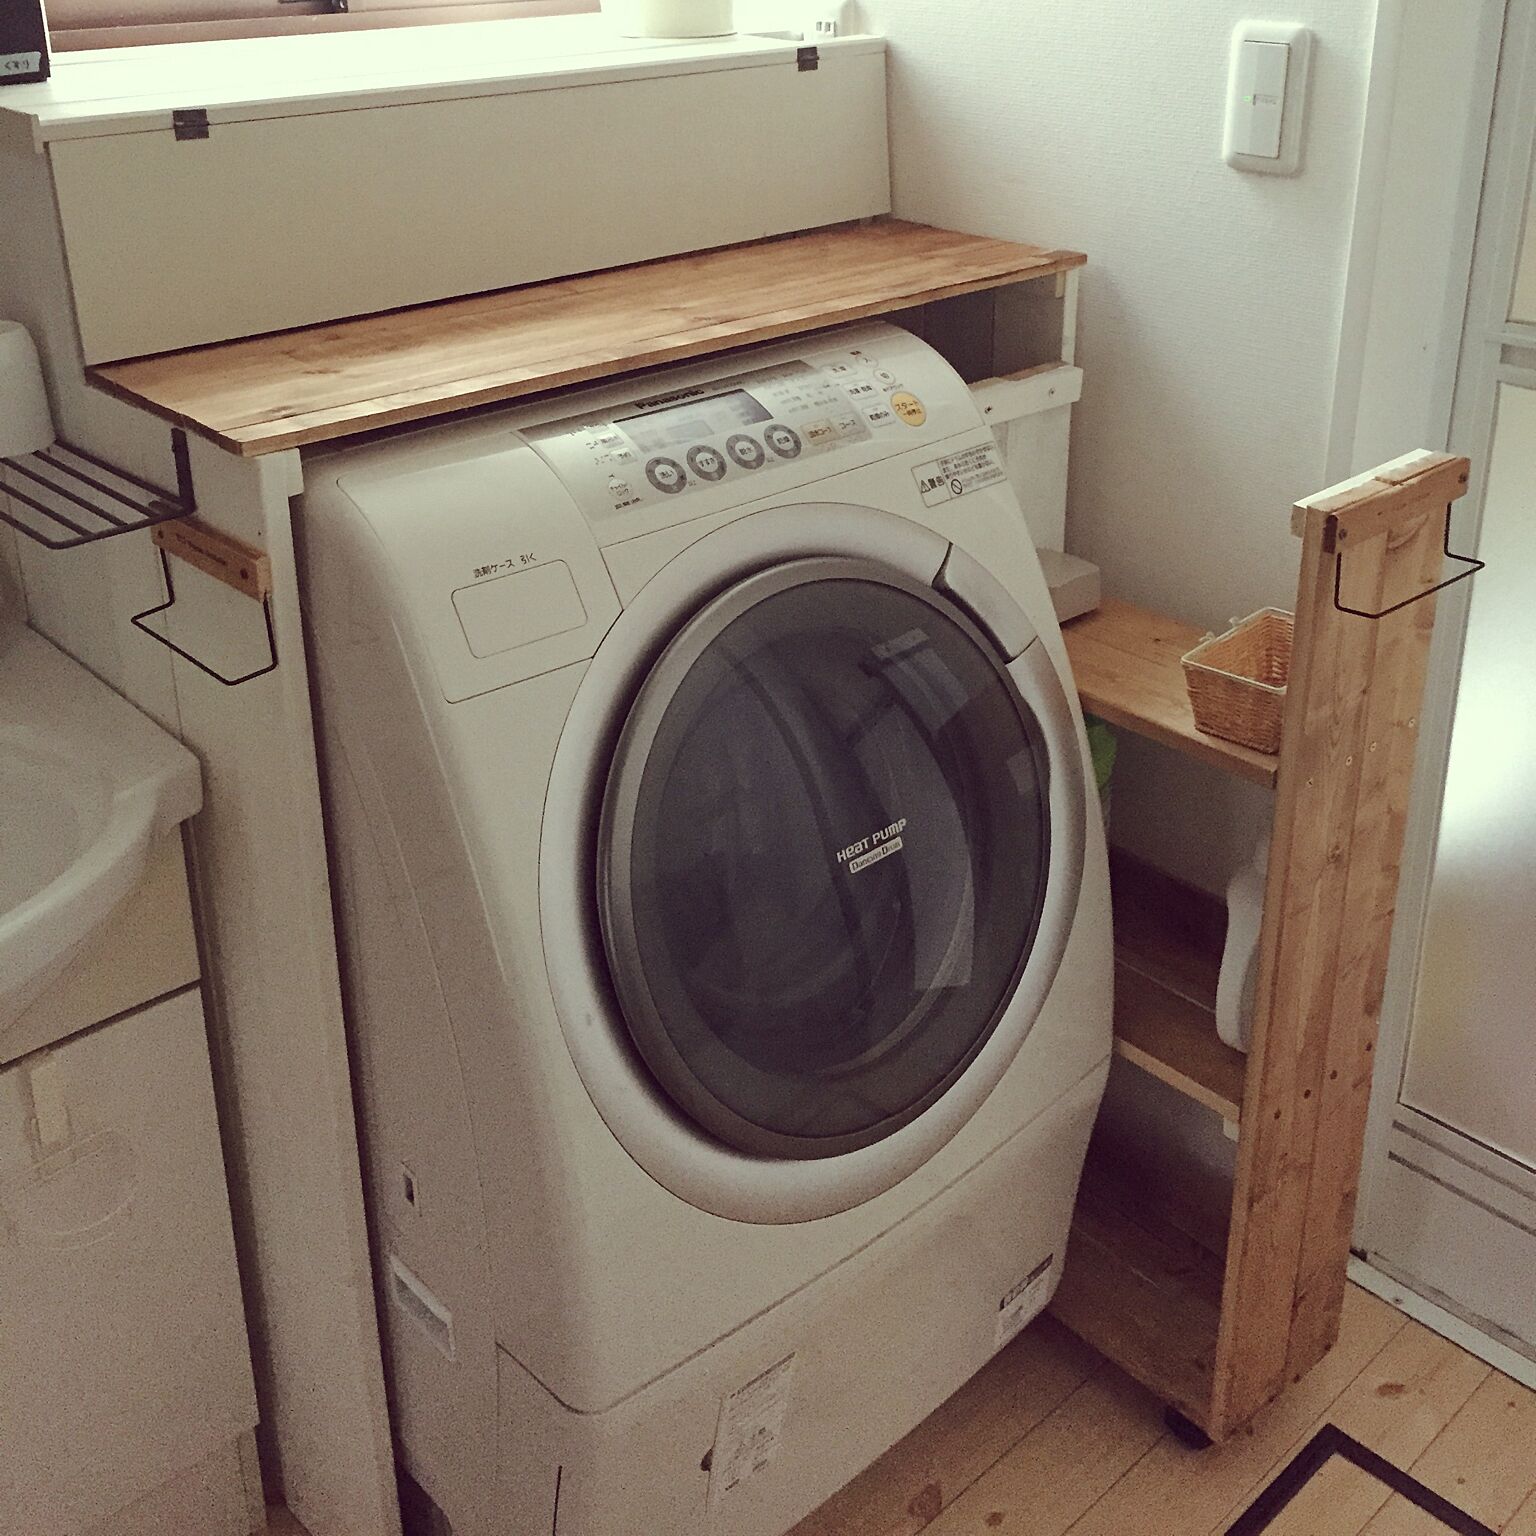 毎日の洗濯が楽々 洗濯機周りをスッキリさせる10の方法 Roomclip Mag 暮らしとインテリアのwebマガジン